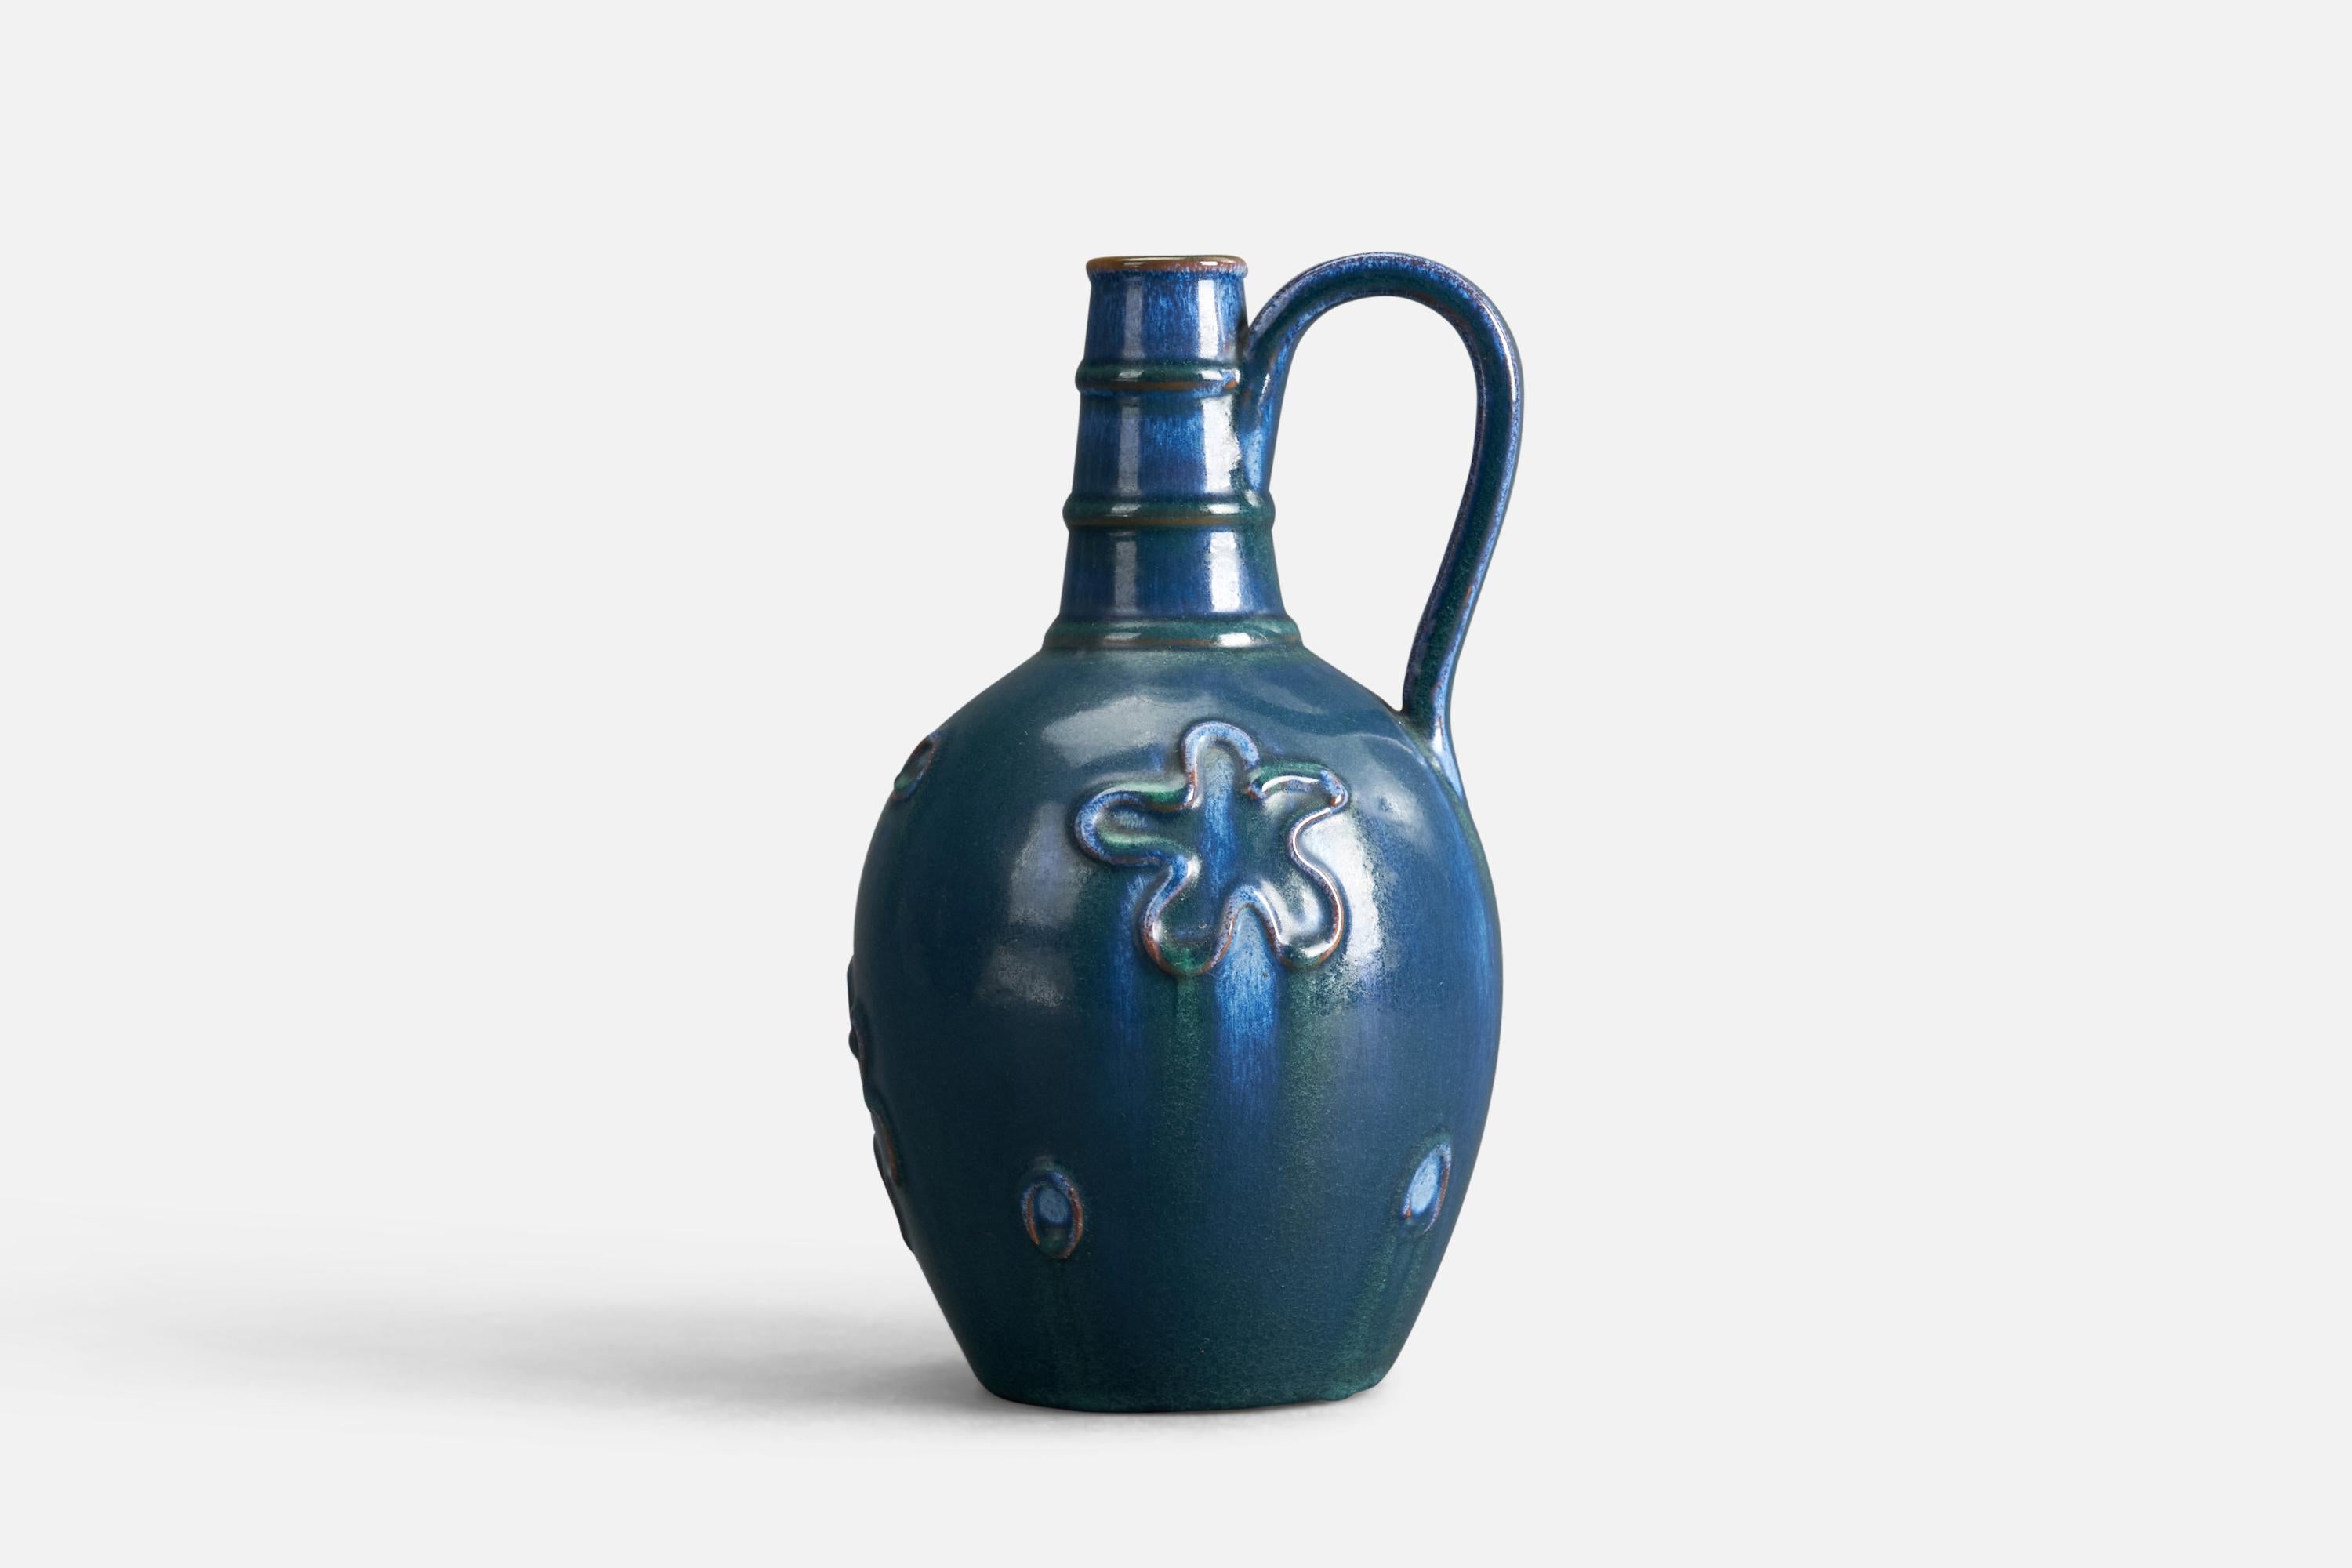 A blue-glazed earthenware vase/pitcher designed and produced by Nittsjö, Sweden, 1940s.